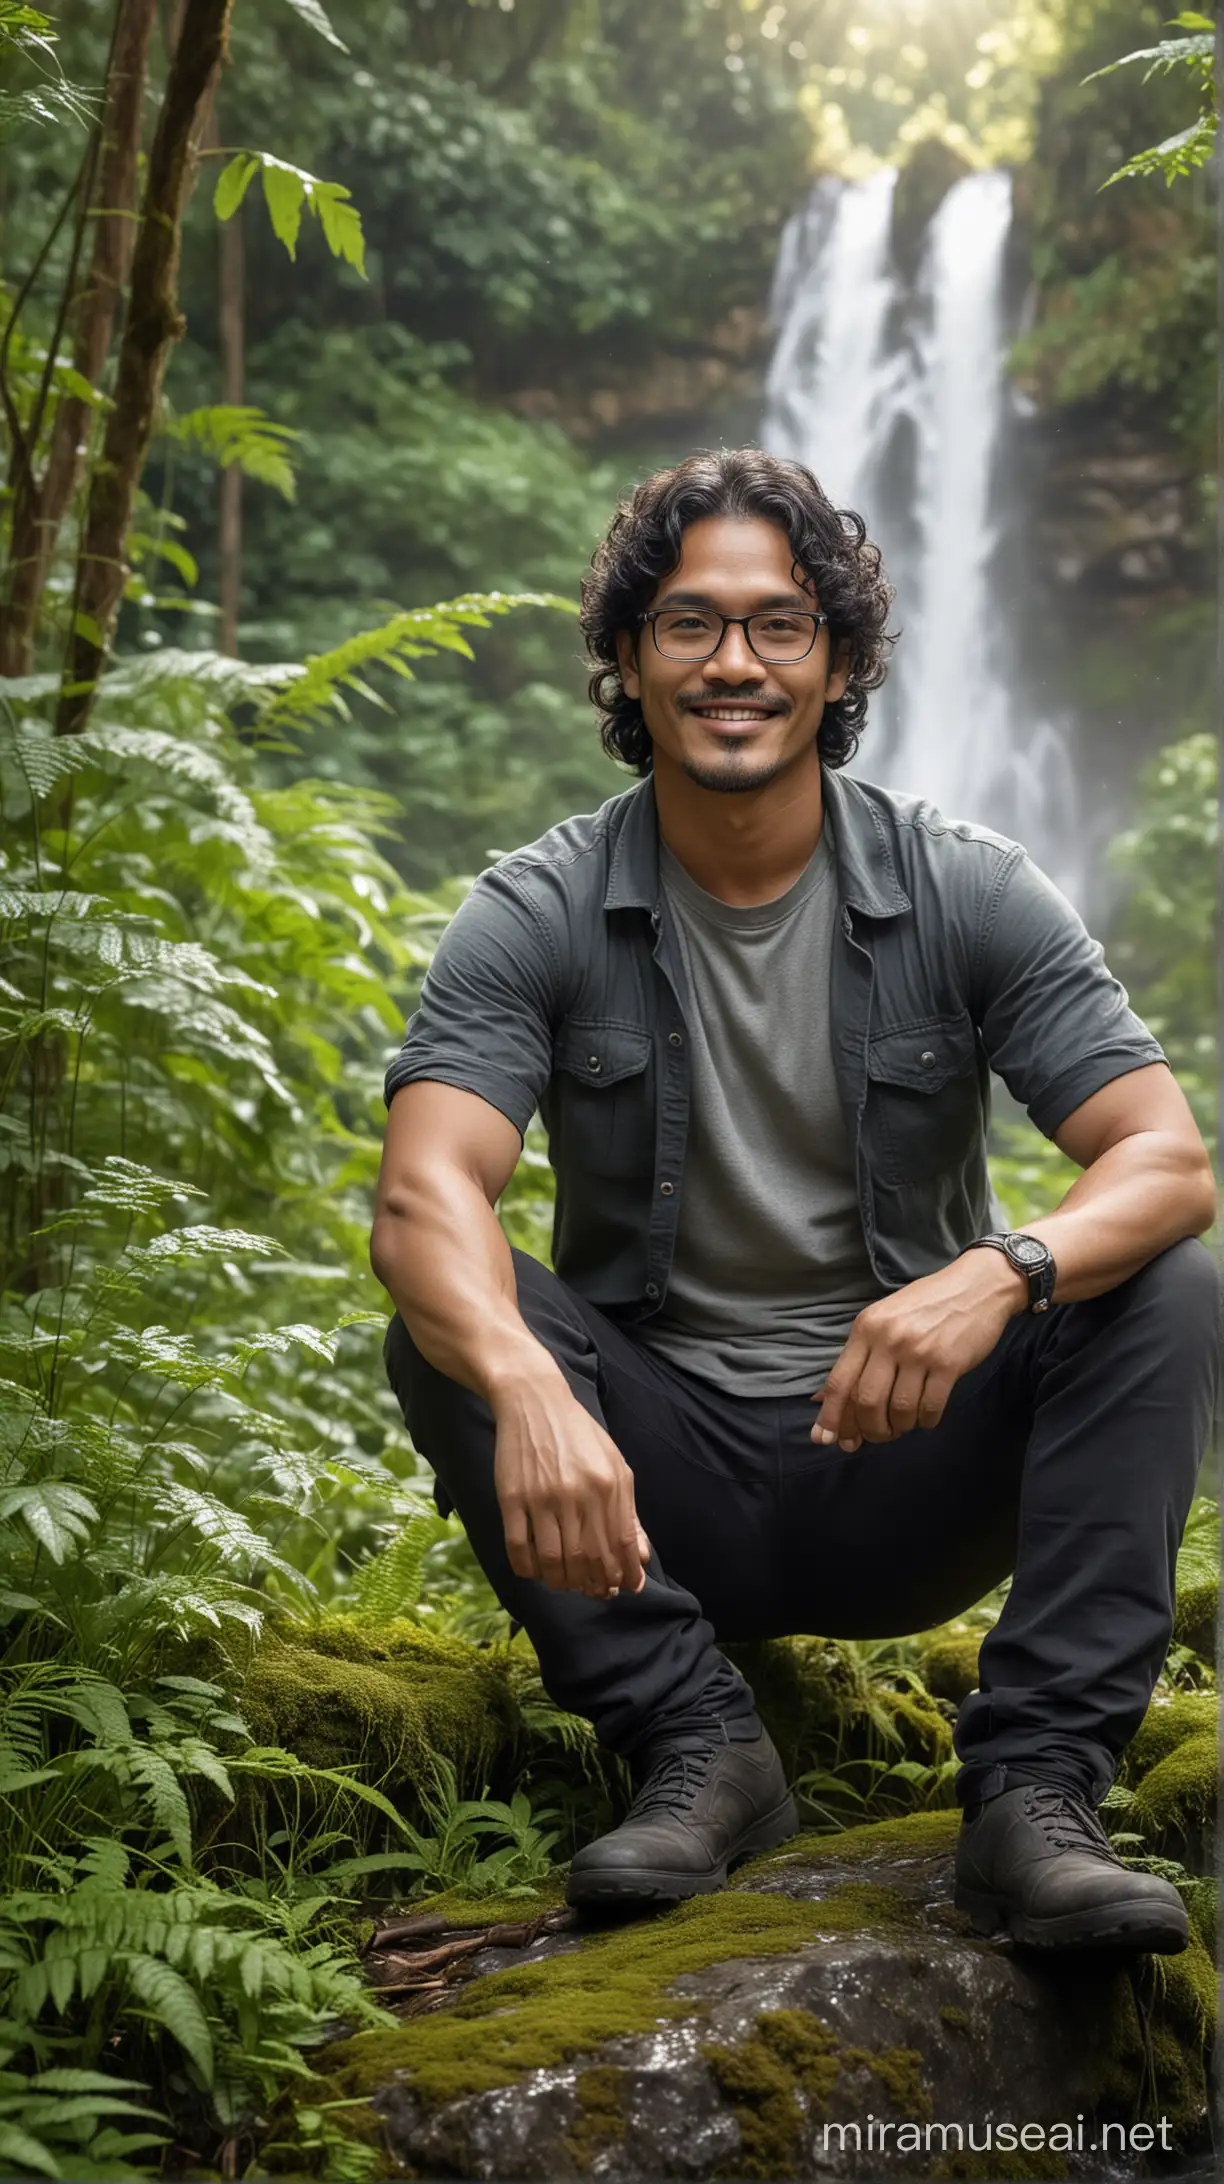 Smiling Indonesian Man Enjoying Serene Forest Ambiance